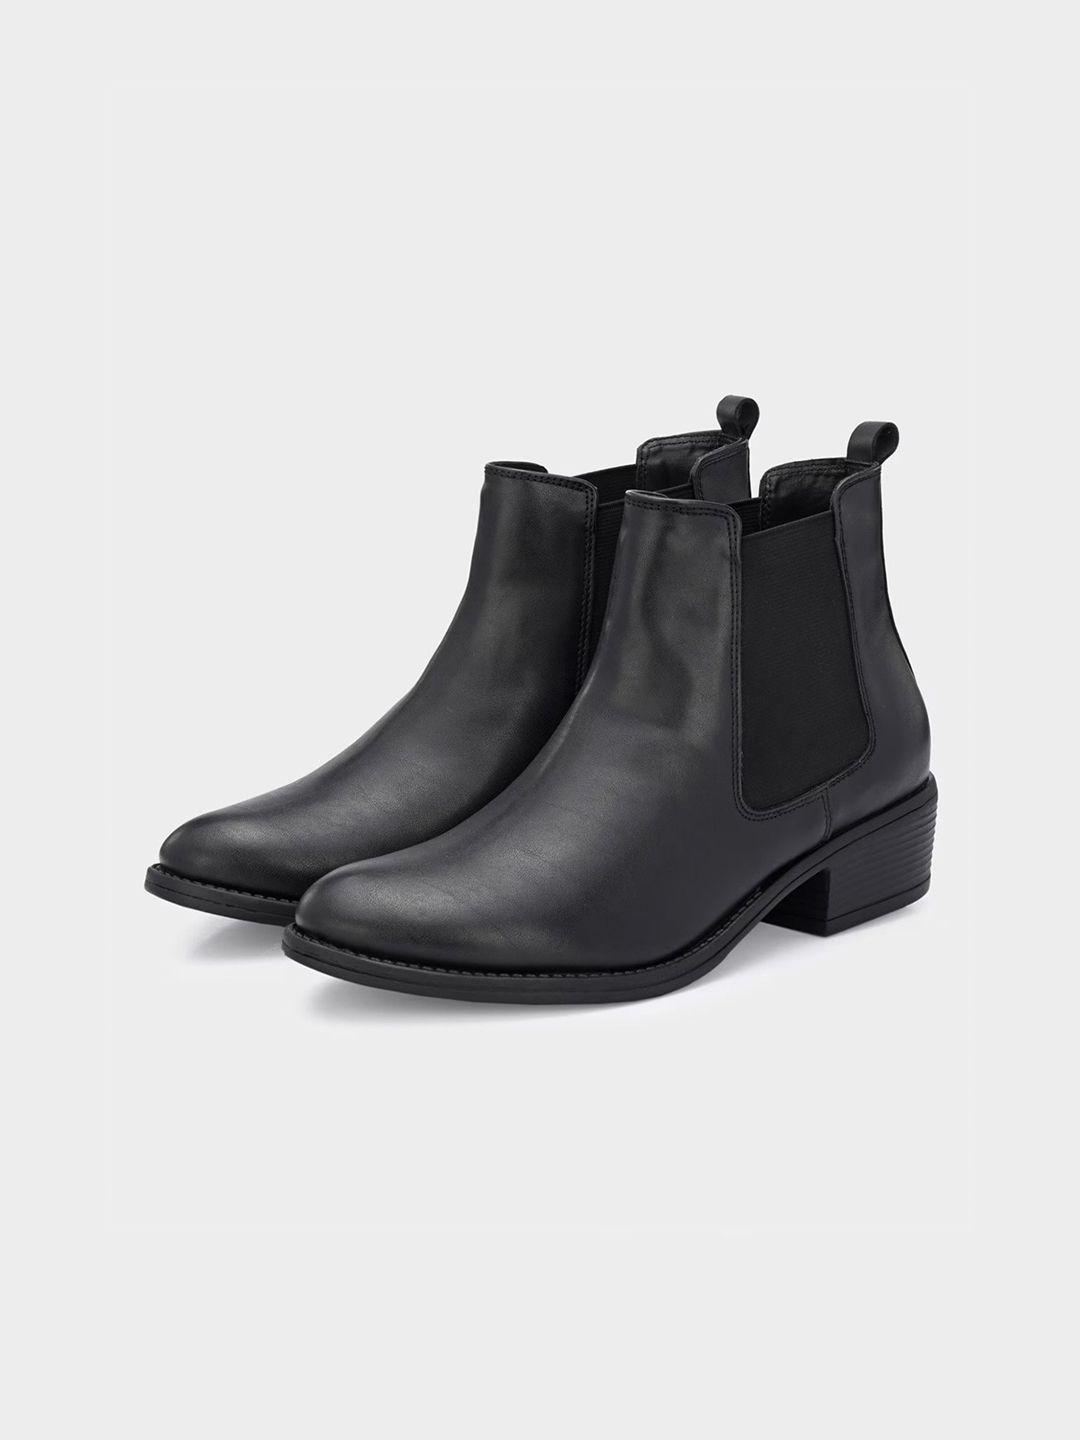 miseen women block-heeled mid-top chelsea boots